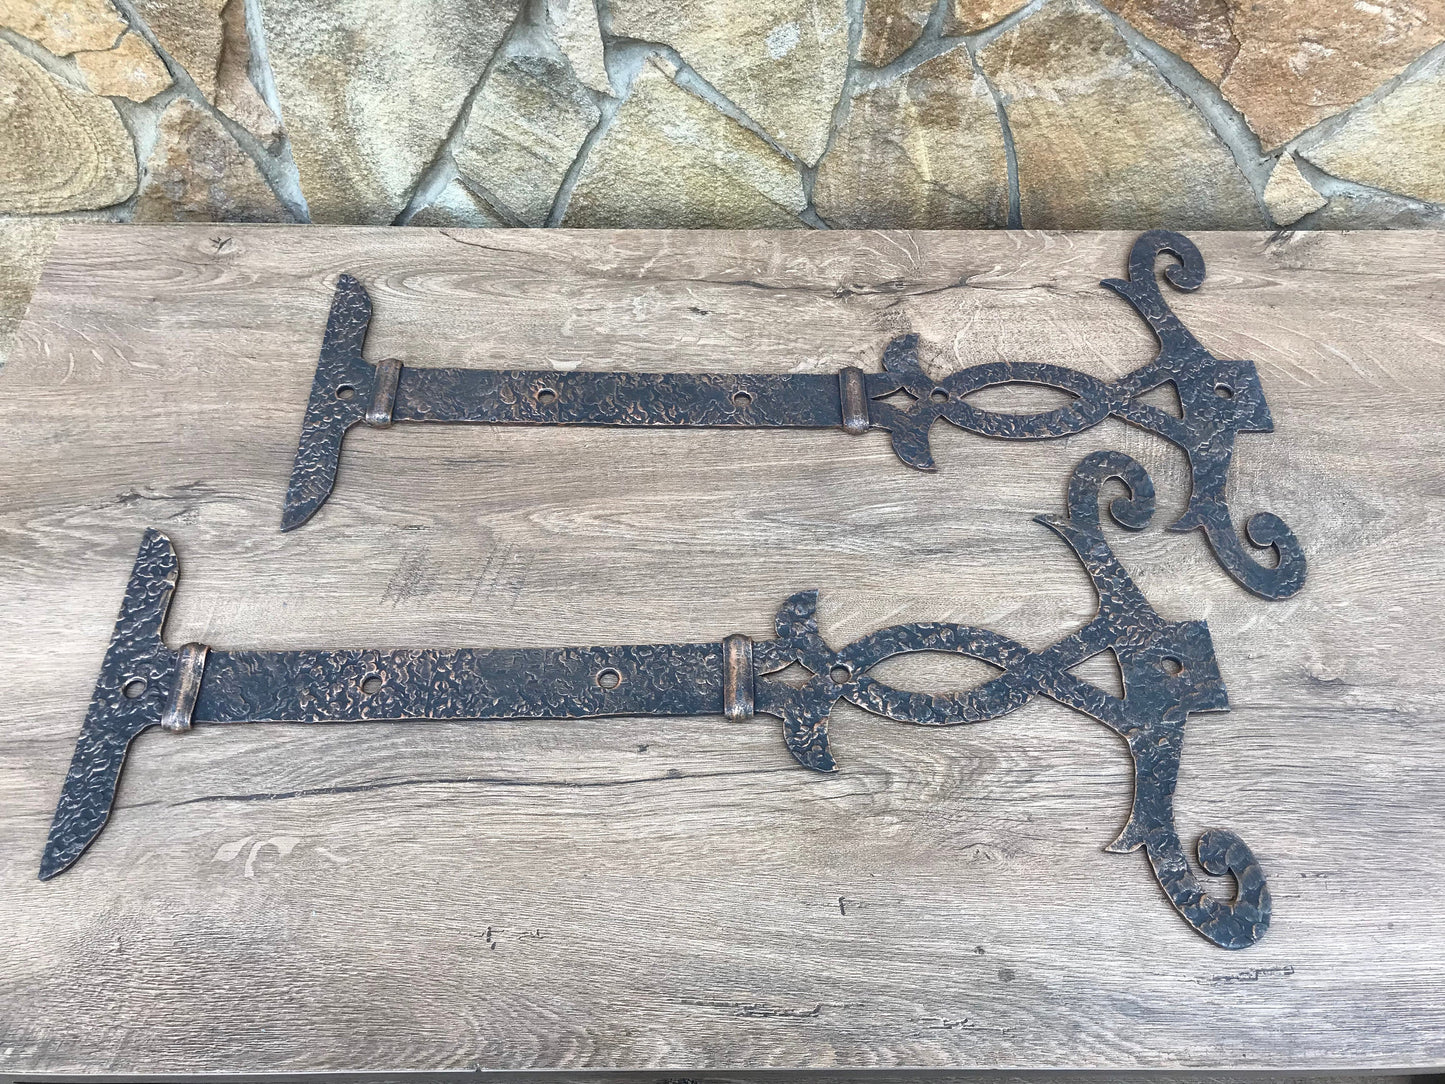 Hinges, pair of hinges, antique door hardware, door handle, hammer, nail, screw, strap hinges, door decor, antique door hinges,hardware,door